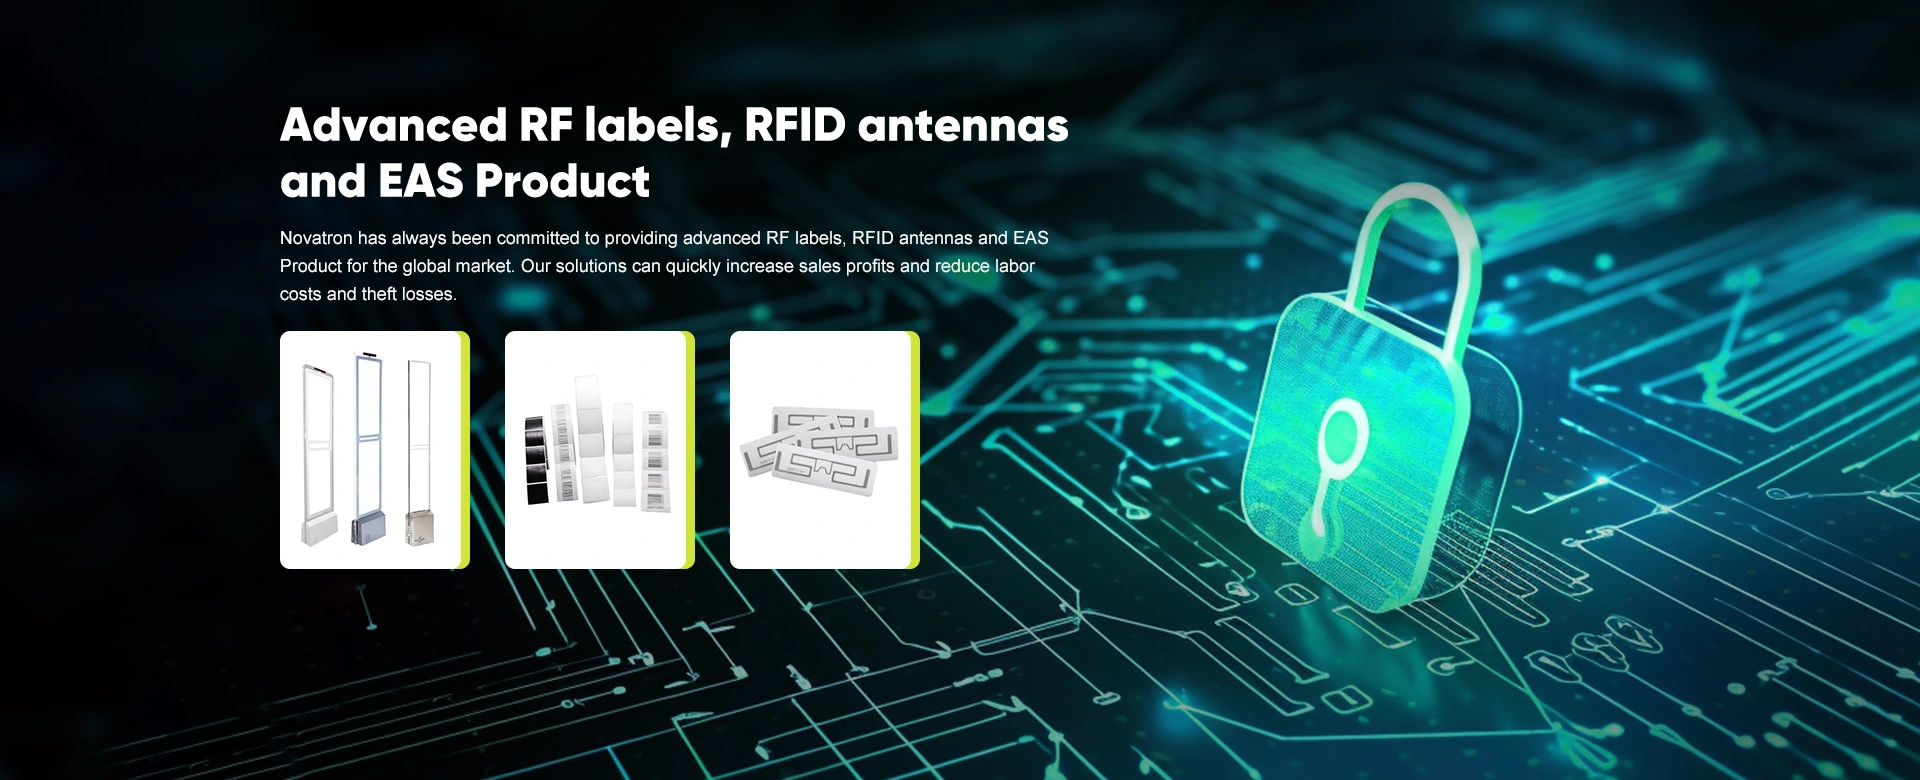 ملصقات RF المتقدمة ، هوائيات RFID ومنتجات EAS